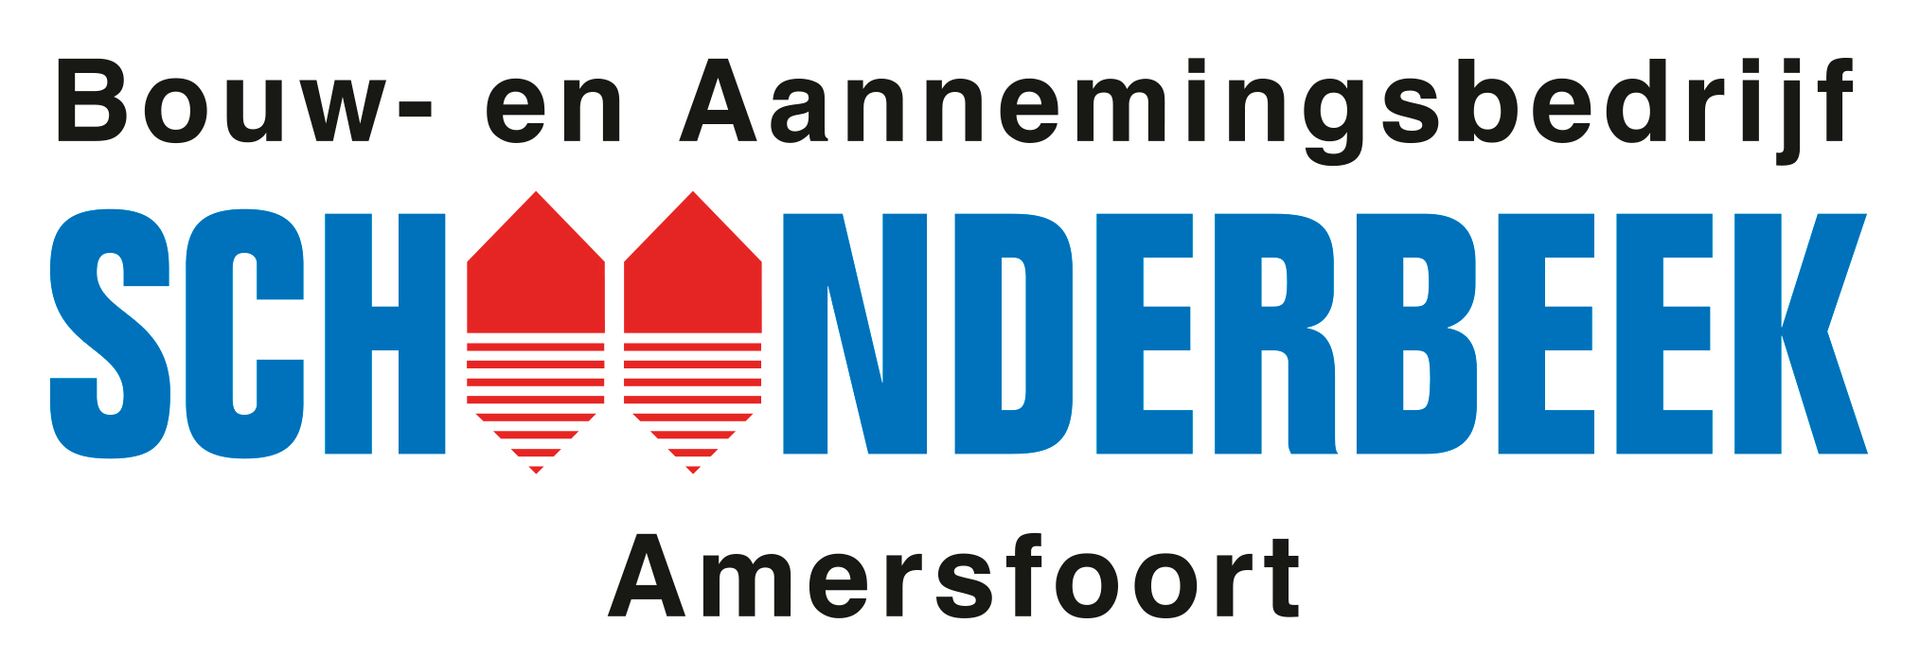 Schoonderbeekk logo